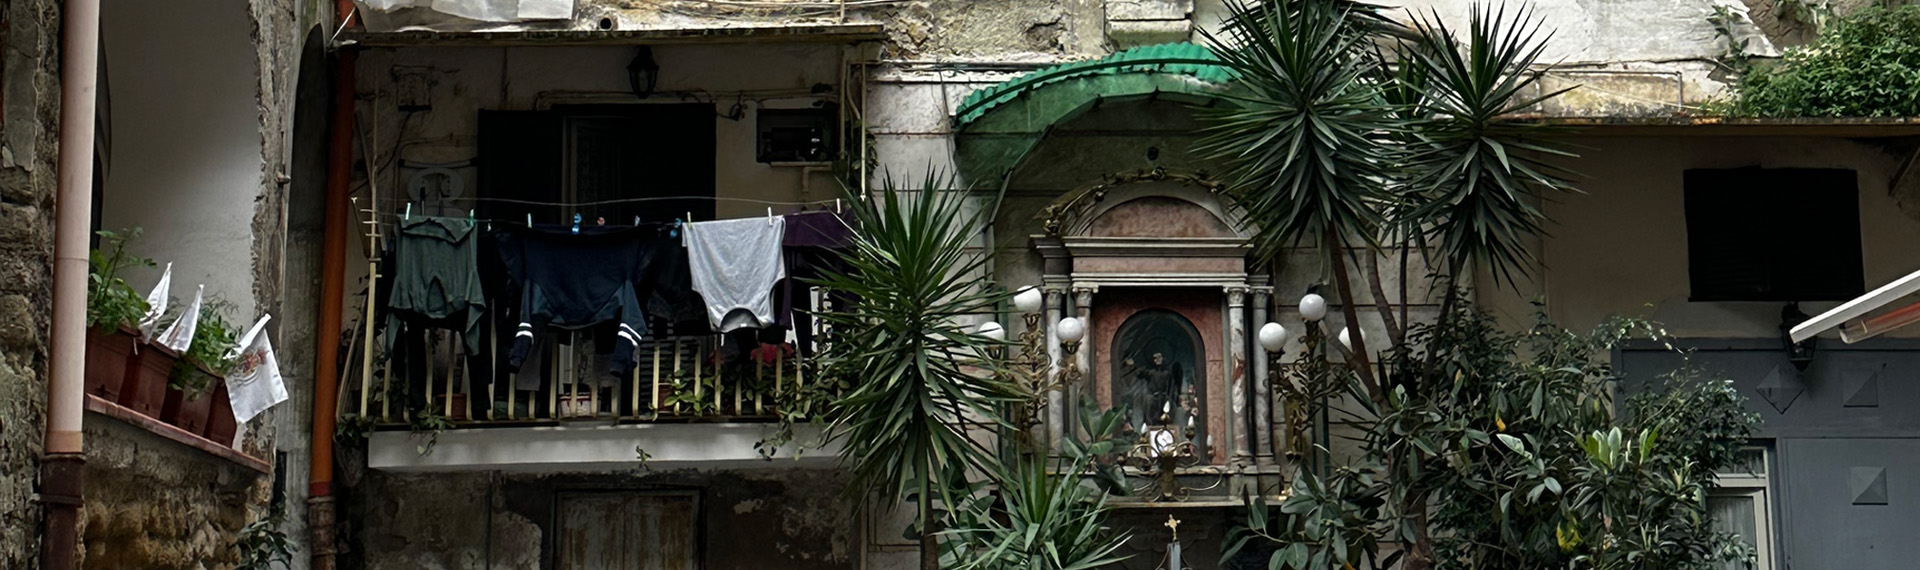 Foto einer Wäscheleine vor einem Balkon neben Pflanzen. 